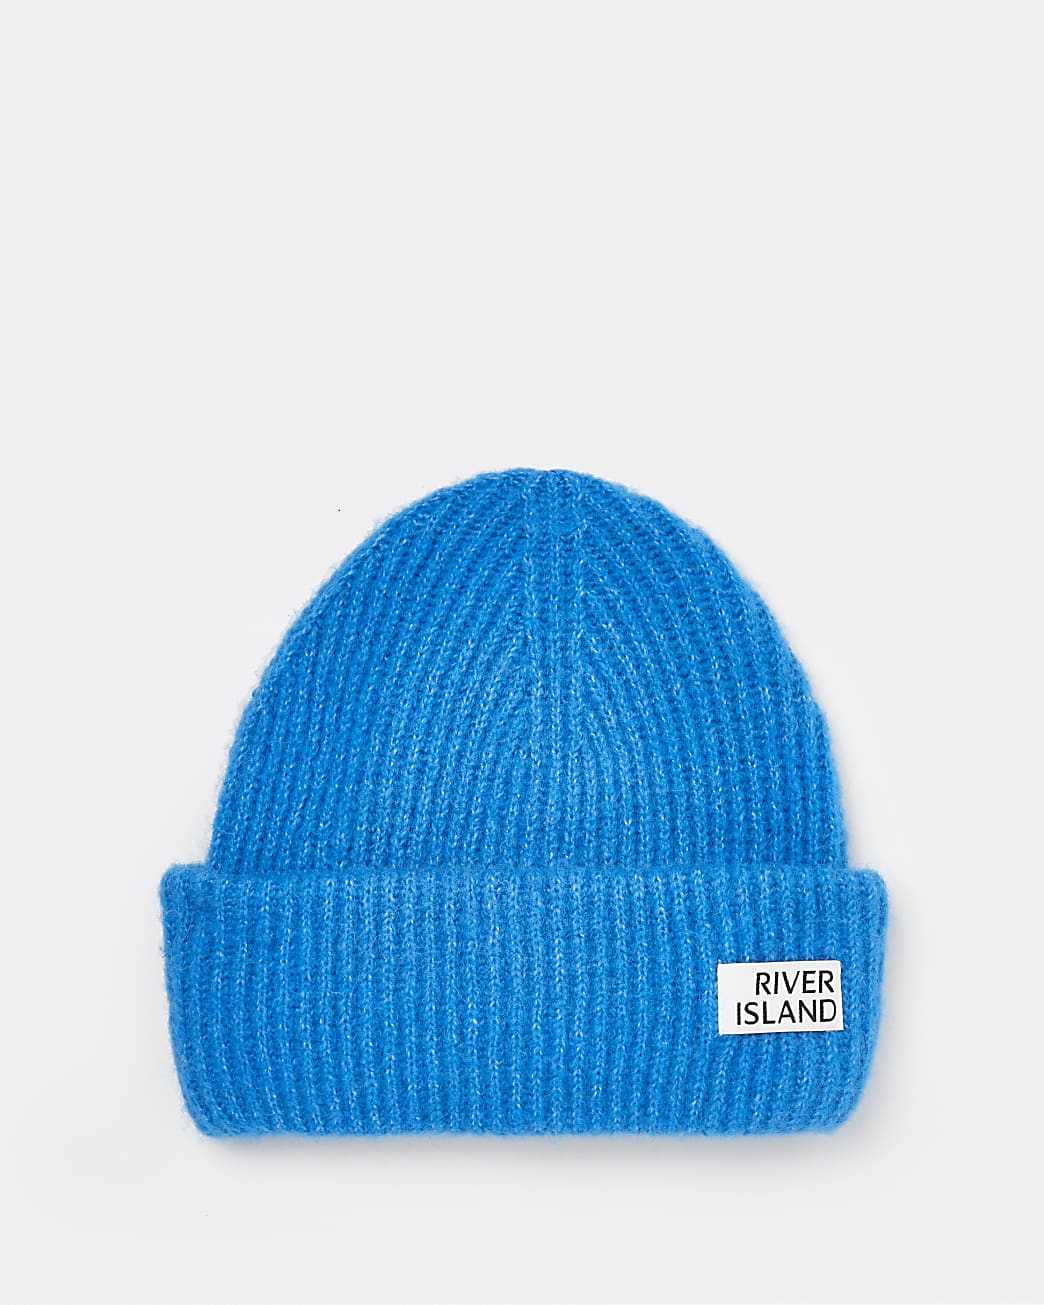 Blue beanie hat